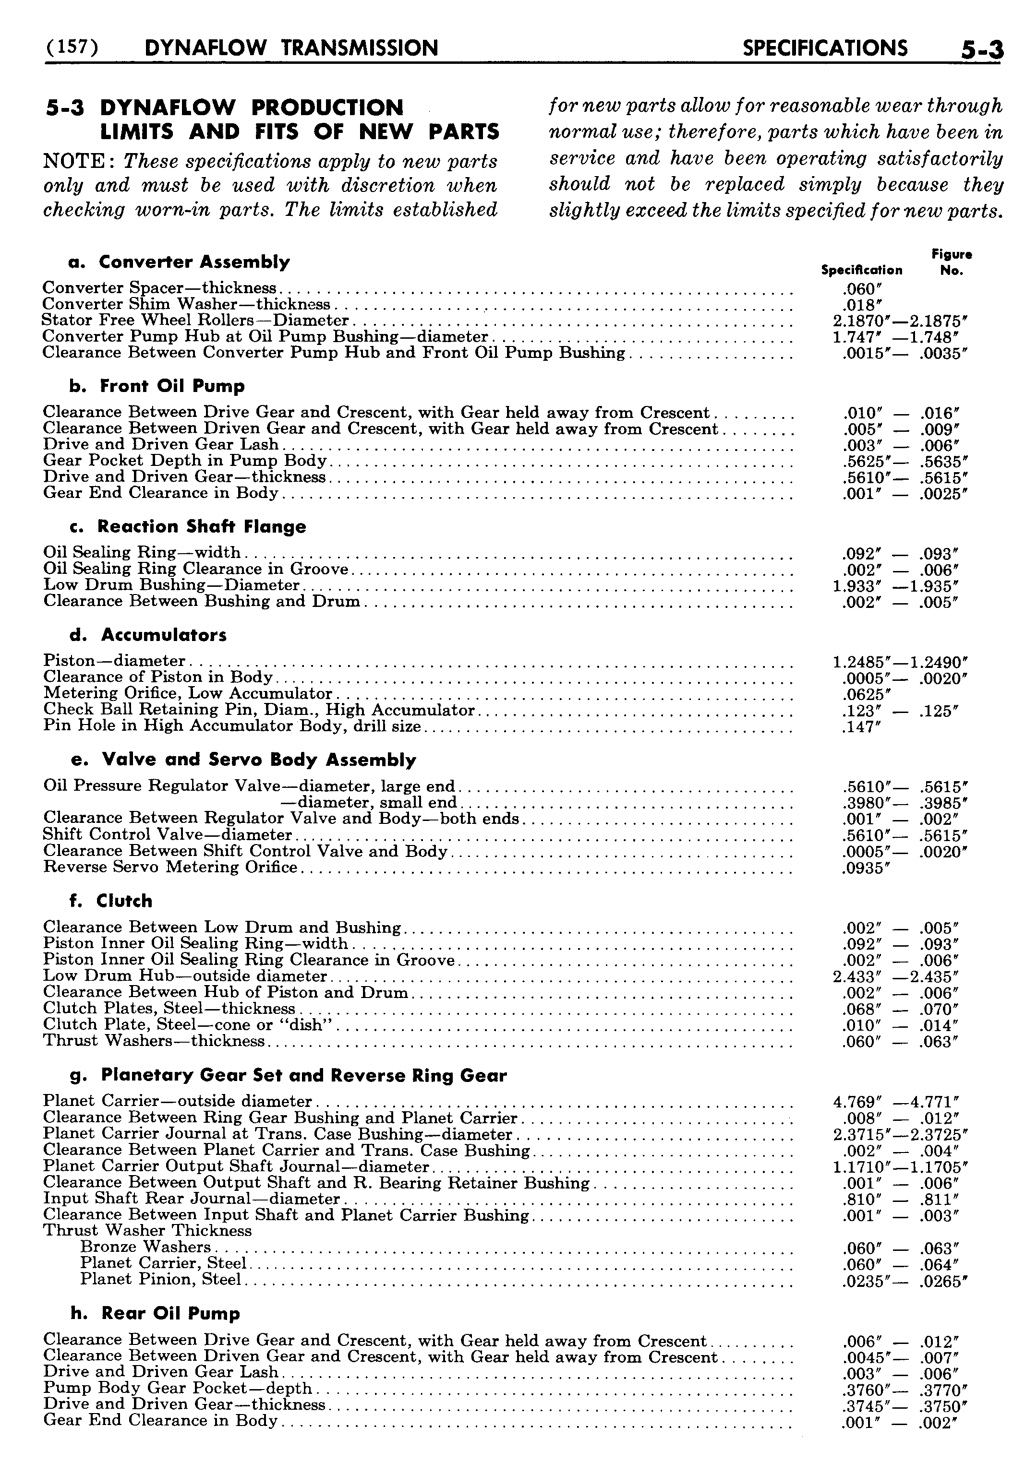 n_06 1954 Buick Shop Manual - Dynaflow-003-003.jpg